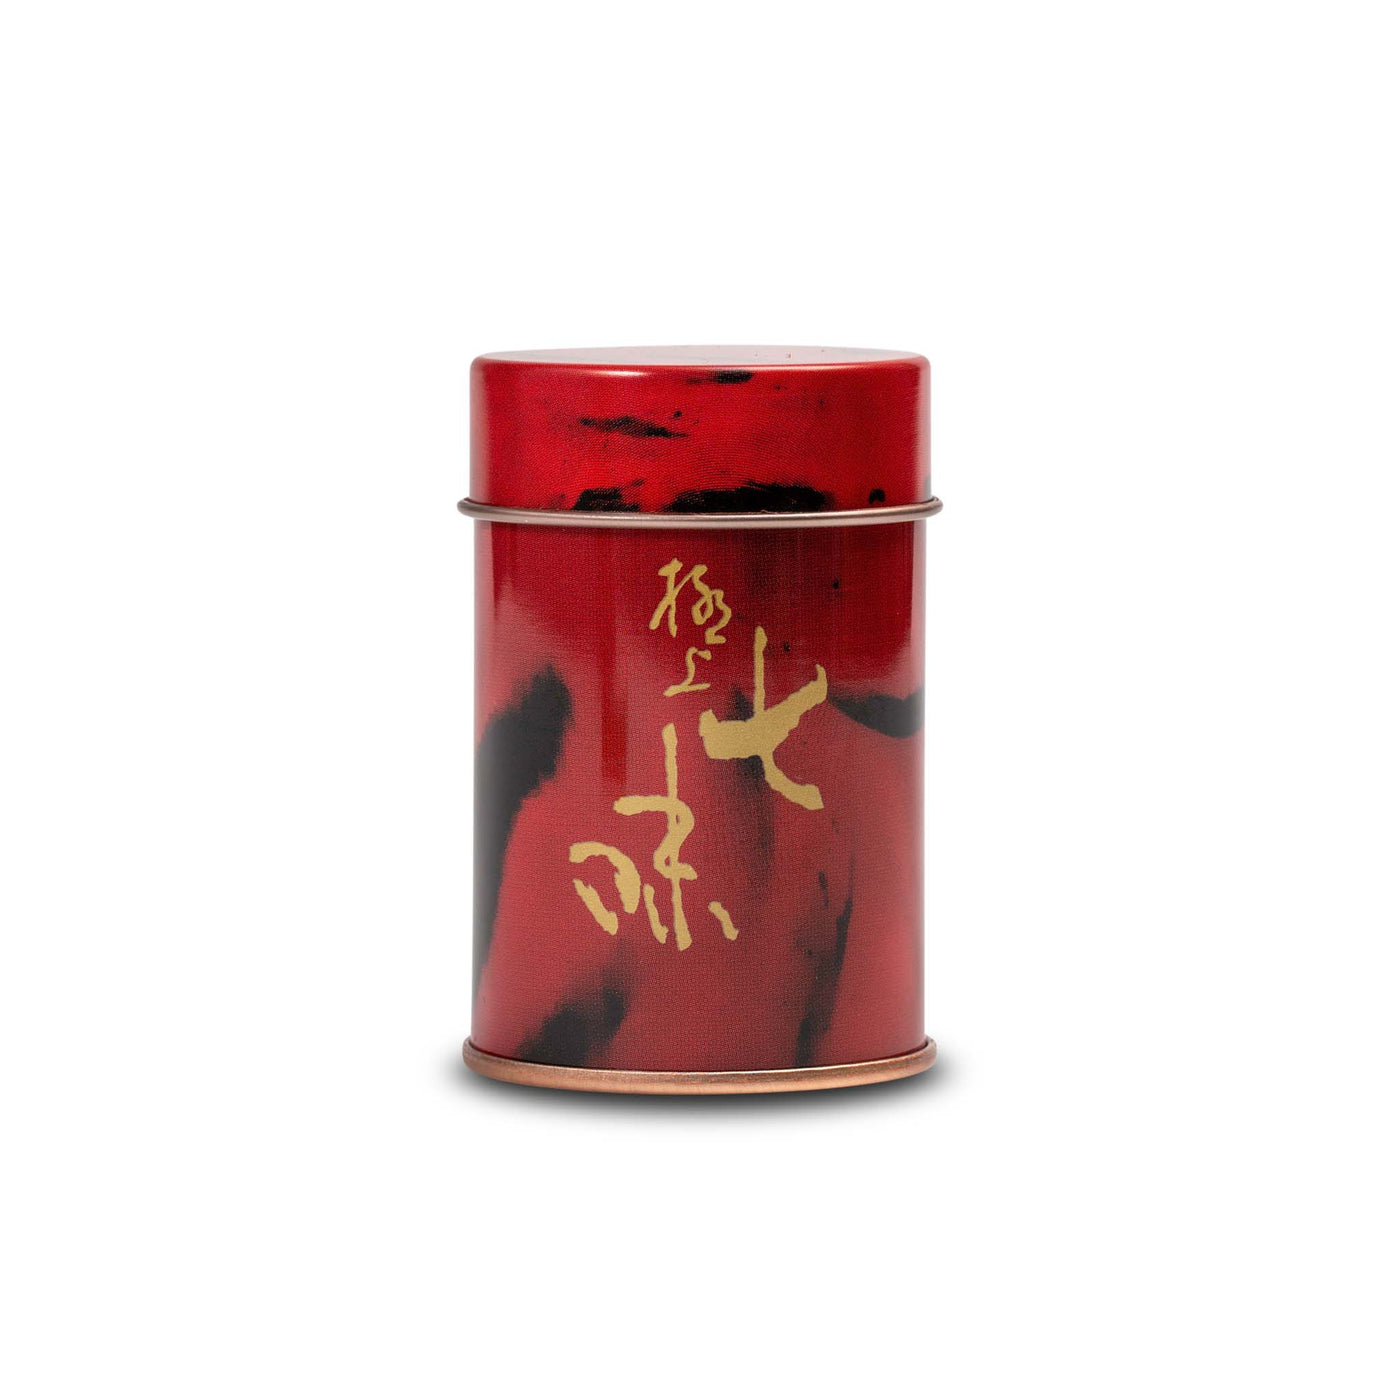 Spice Tin for Shichimi Togarashi